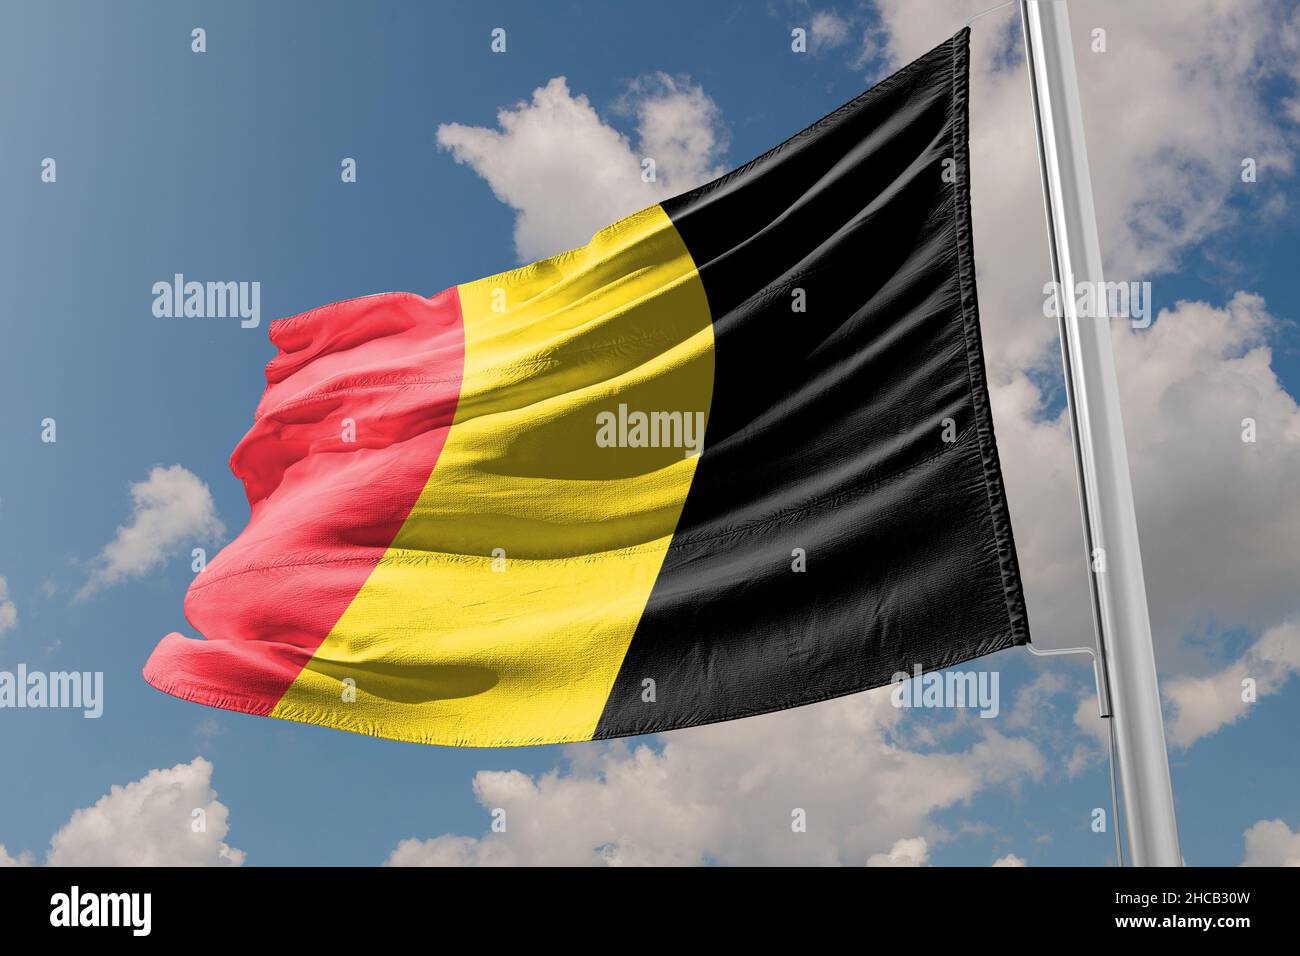 Le drapeau de la Belgique est un tricolore composé de trois bandes verticales égales affichant les couleurs nationales de la Belgique : noir, jaune et rouge Banque D'Images